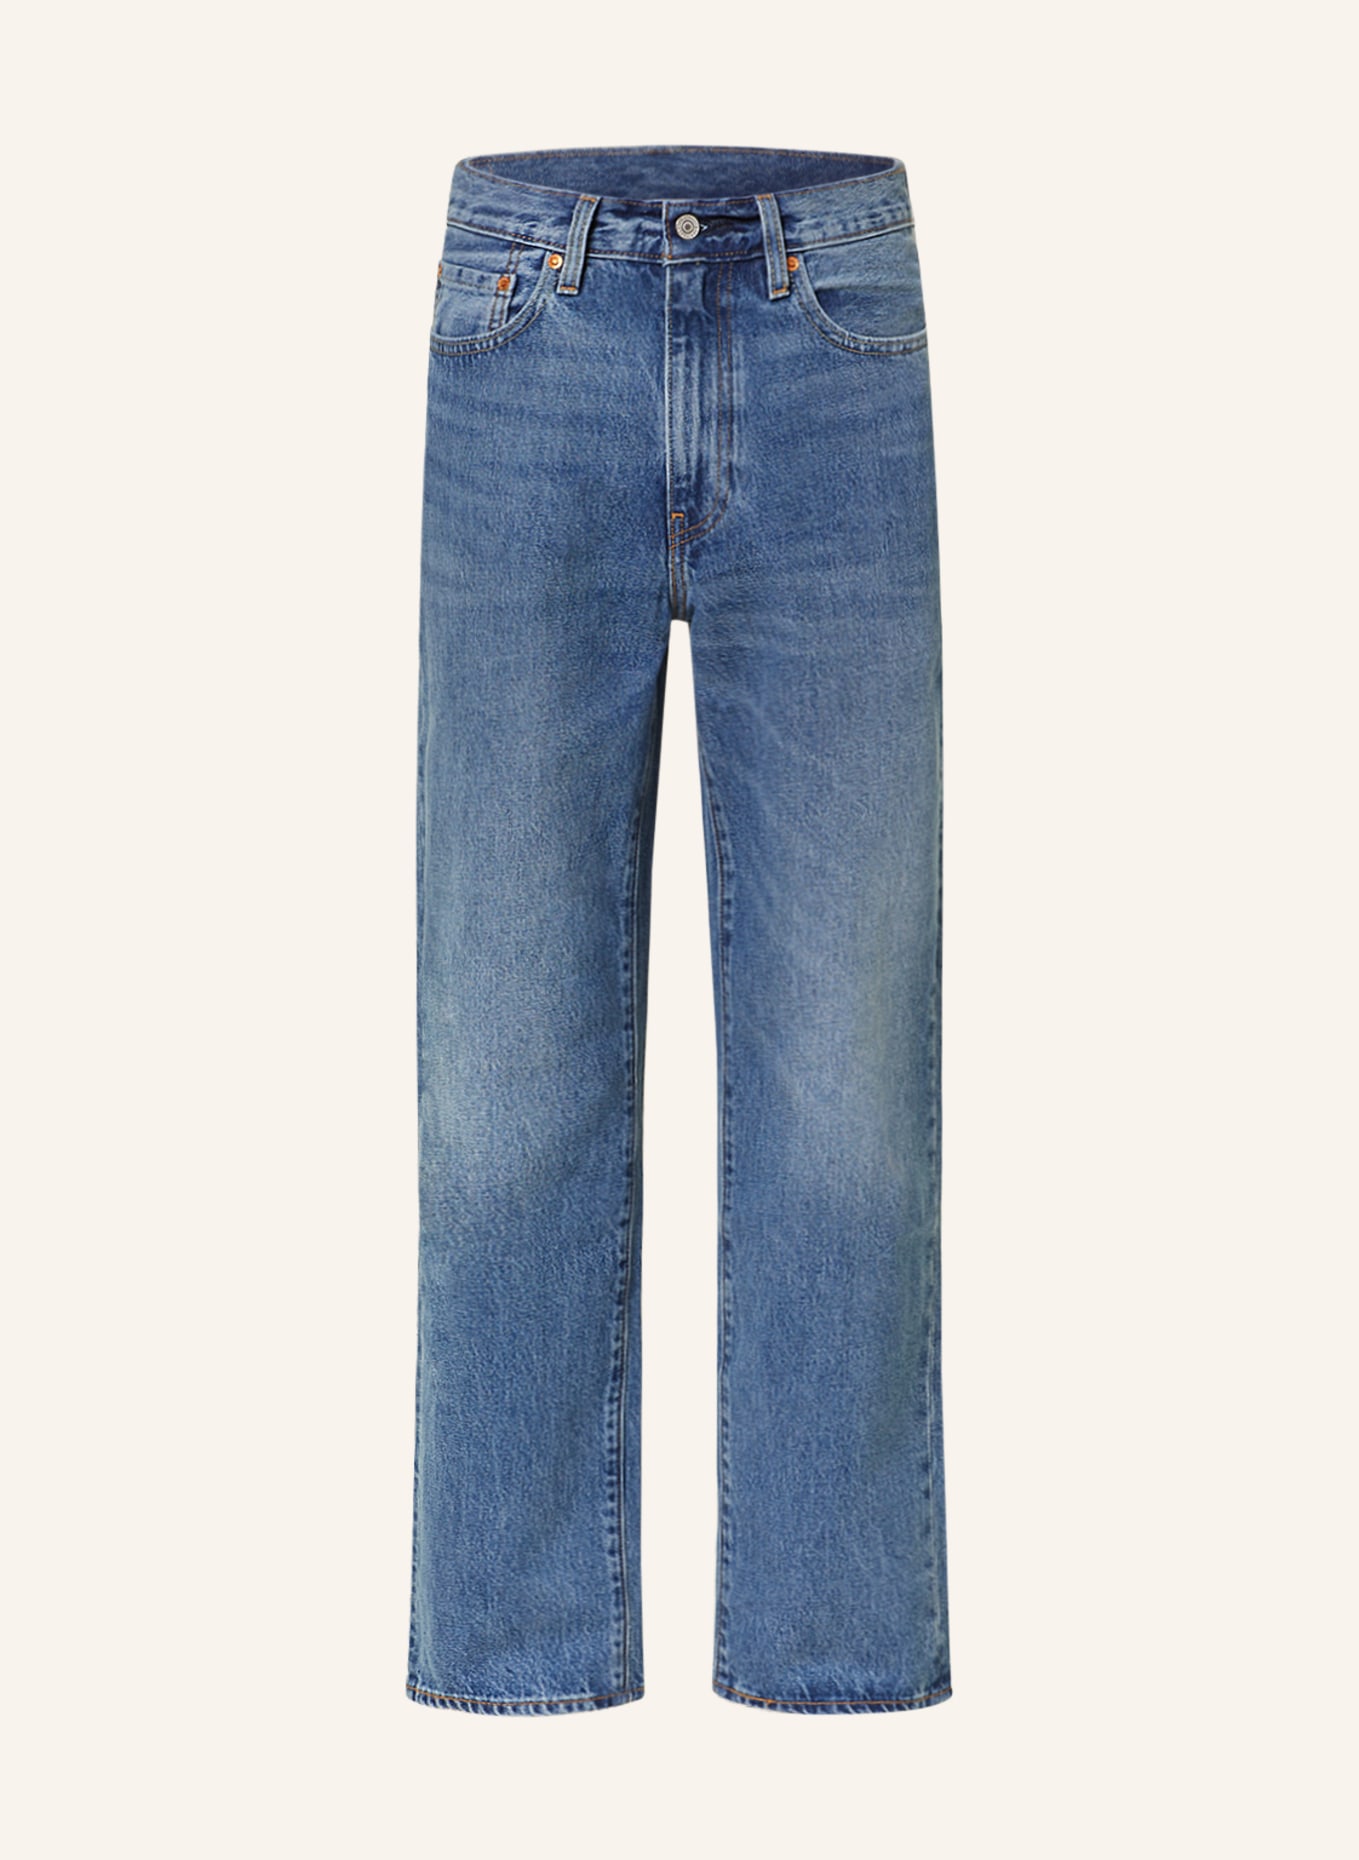 Levi's® Jeans 568 STAY LOOSE regular fit, Color: 50 Med Indigo - Worn In (Image 1)